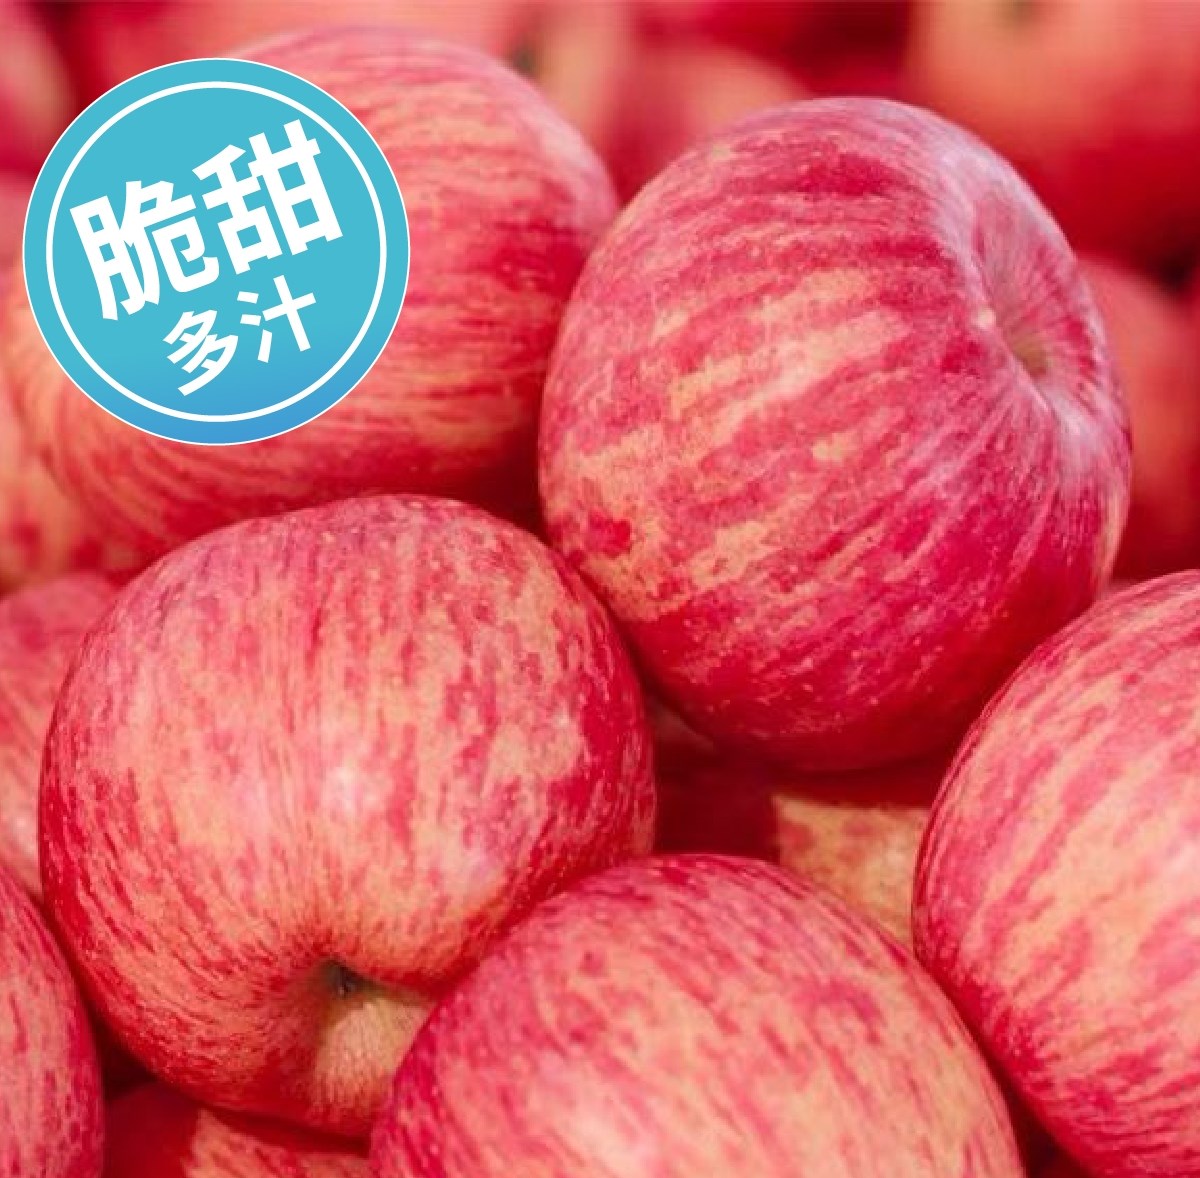 2022年新洛川苹果陕西正宗红富士10斤产地直销当季整箱新鲜水果5